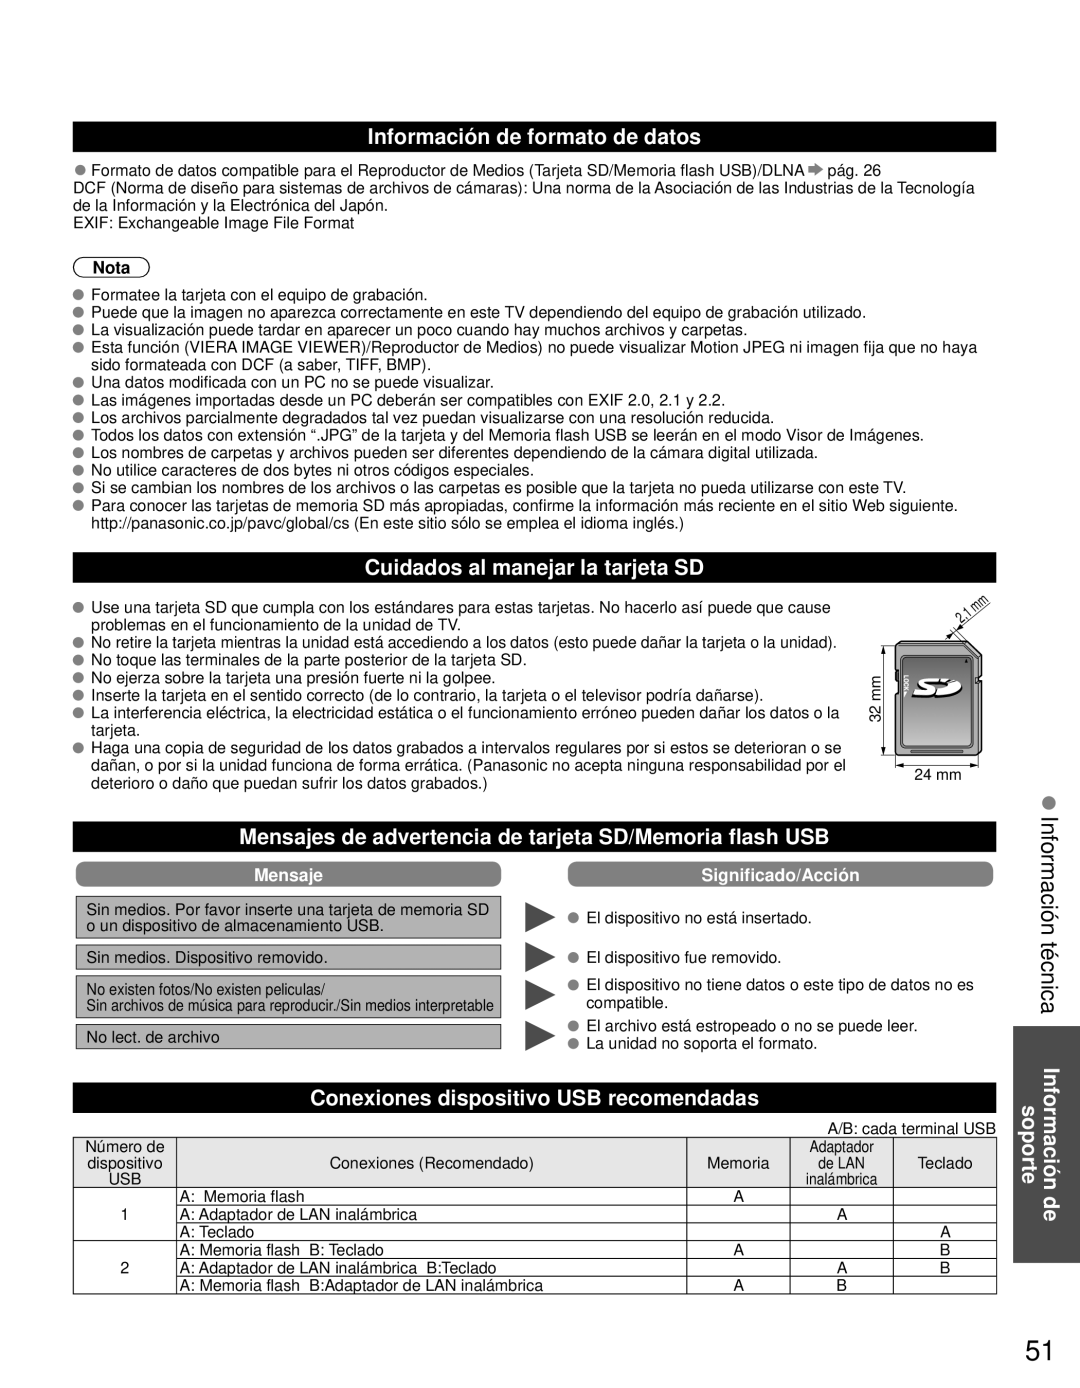 Panasonic TC-L42E3 owner manual Información técnica Información de soporte, Información de formato de datos, Mensaje, Nota 